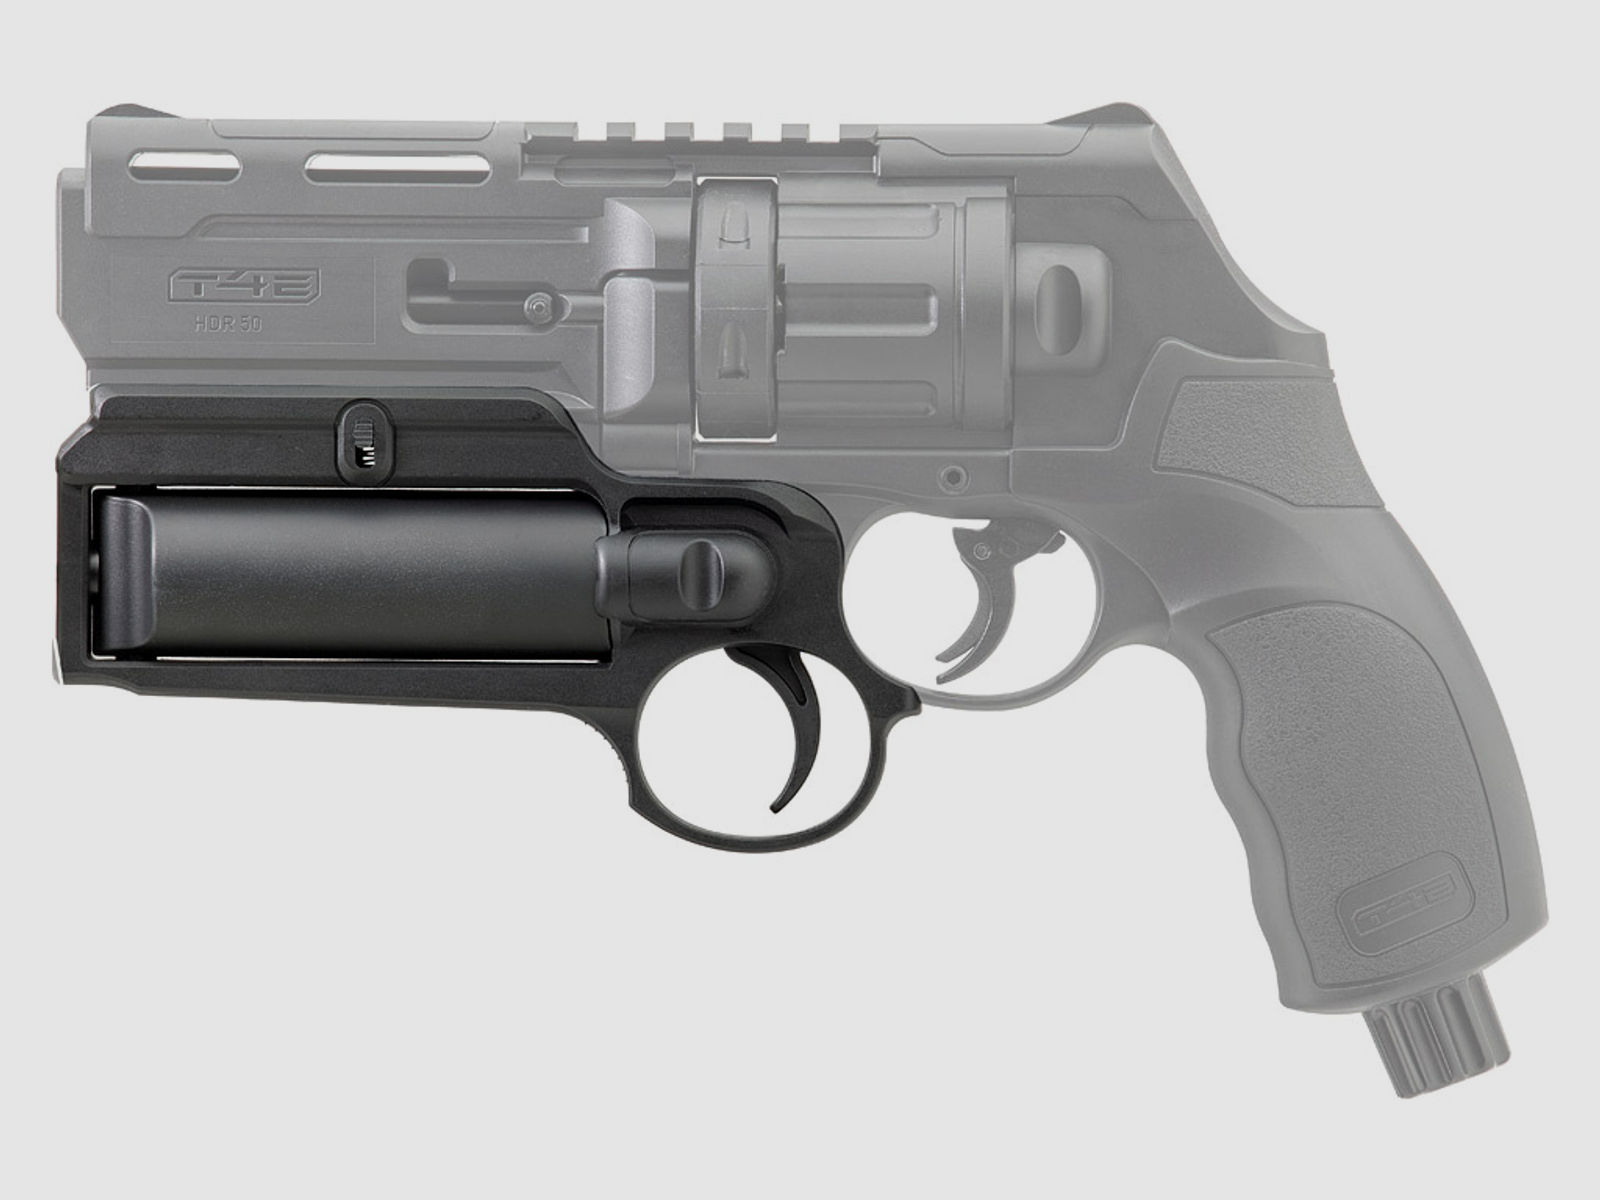 Launcher fĂĽr CO2 Markierer Home Defense Revolver Umarex T4E HDR 50 passend fĂĽr Walther P2P PGS Abwehrspray Kartuschen